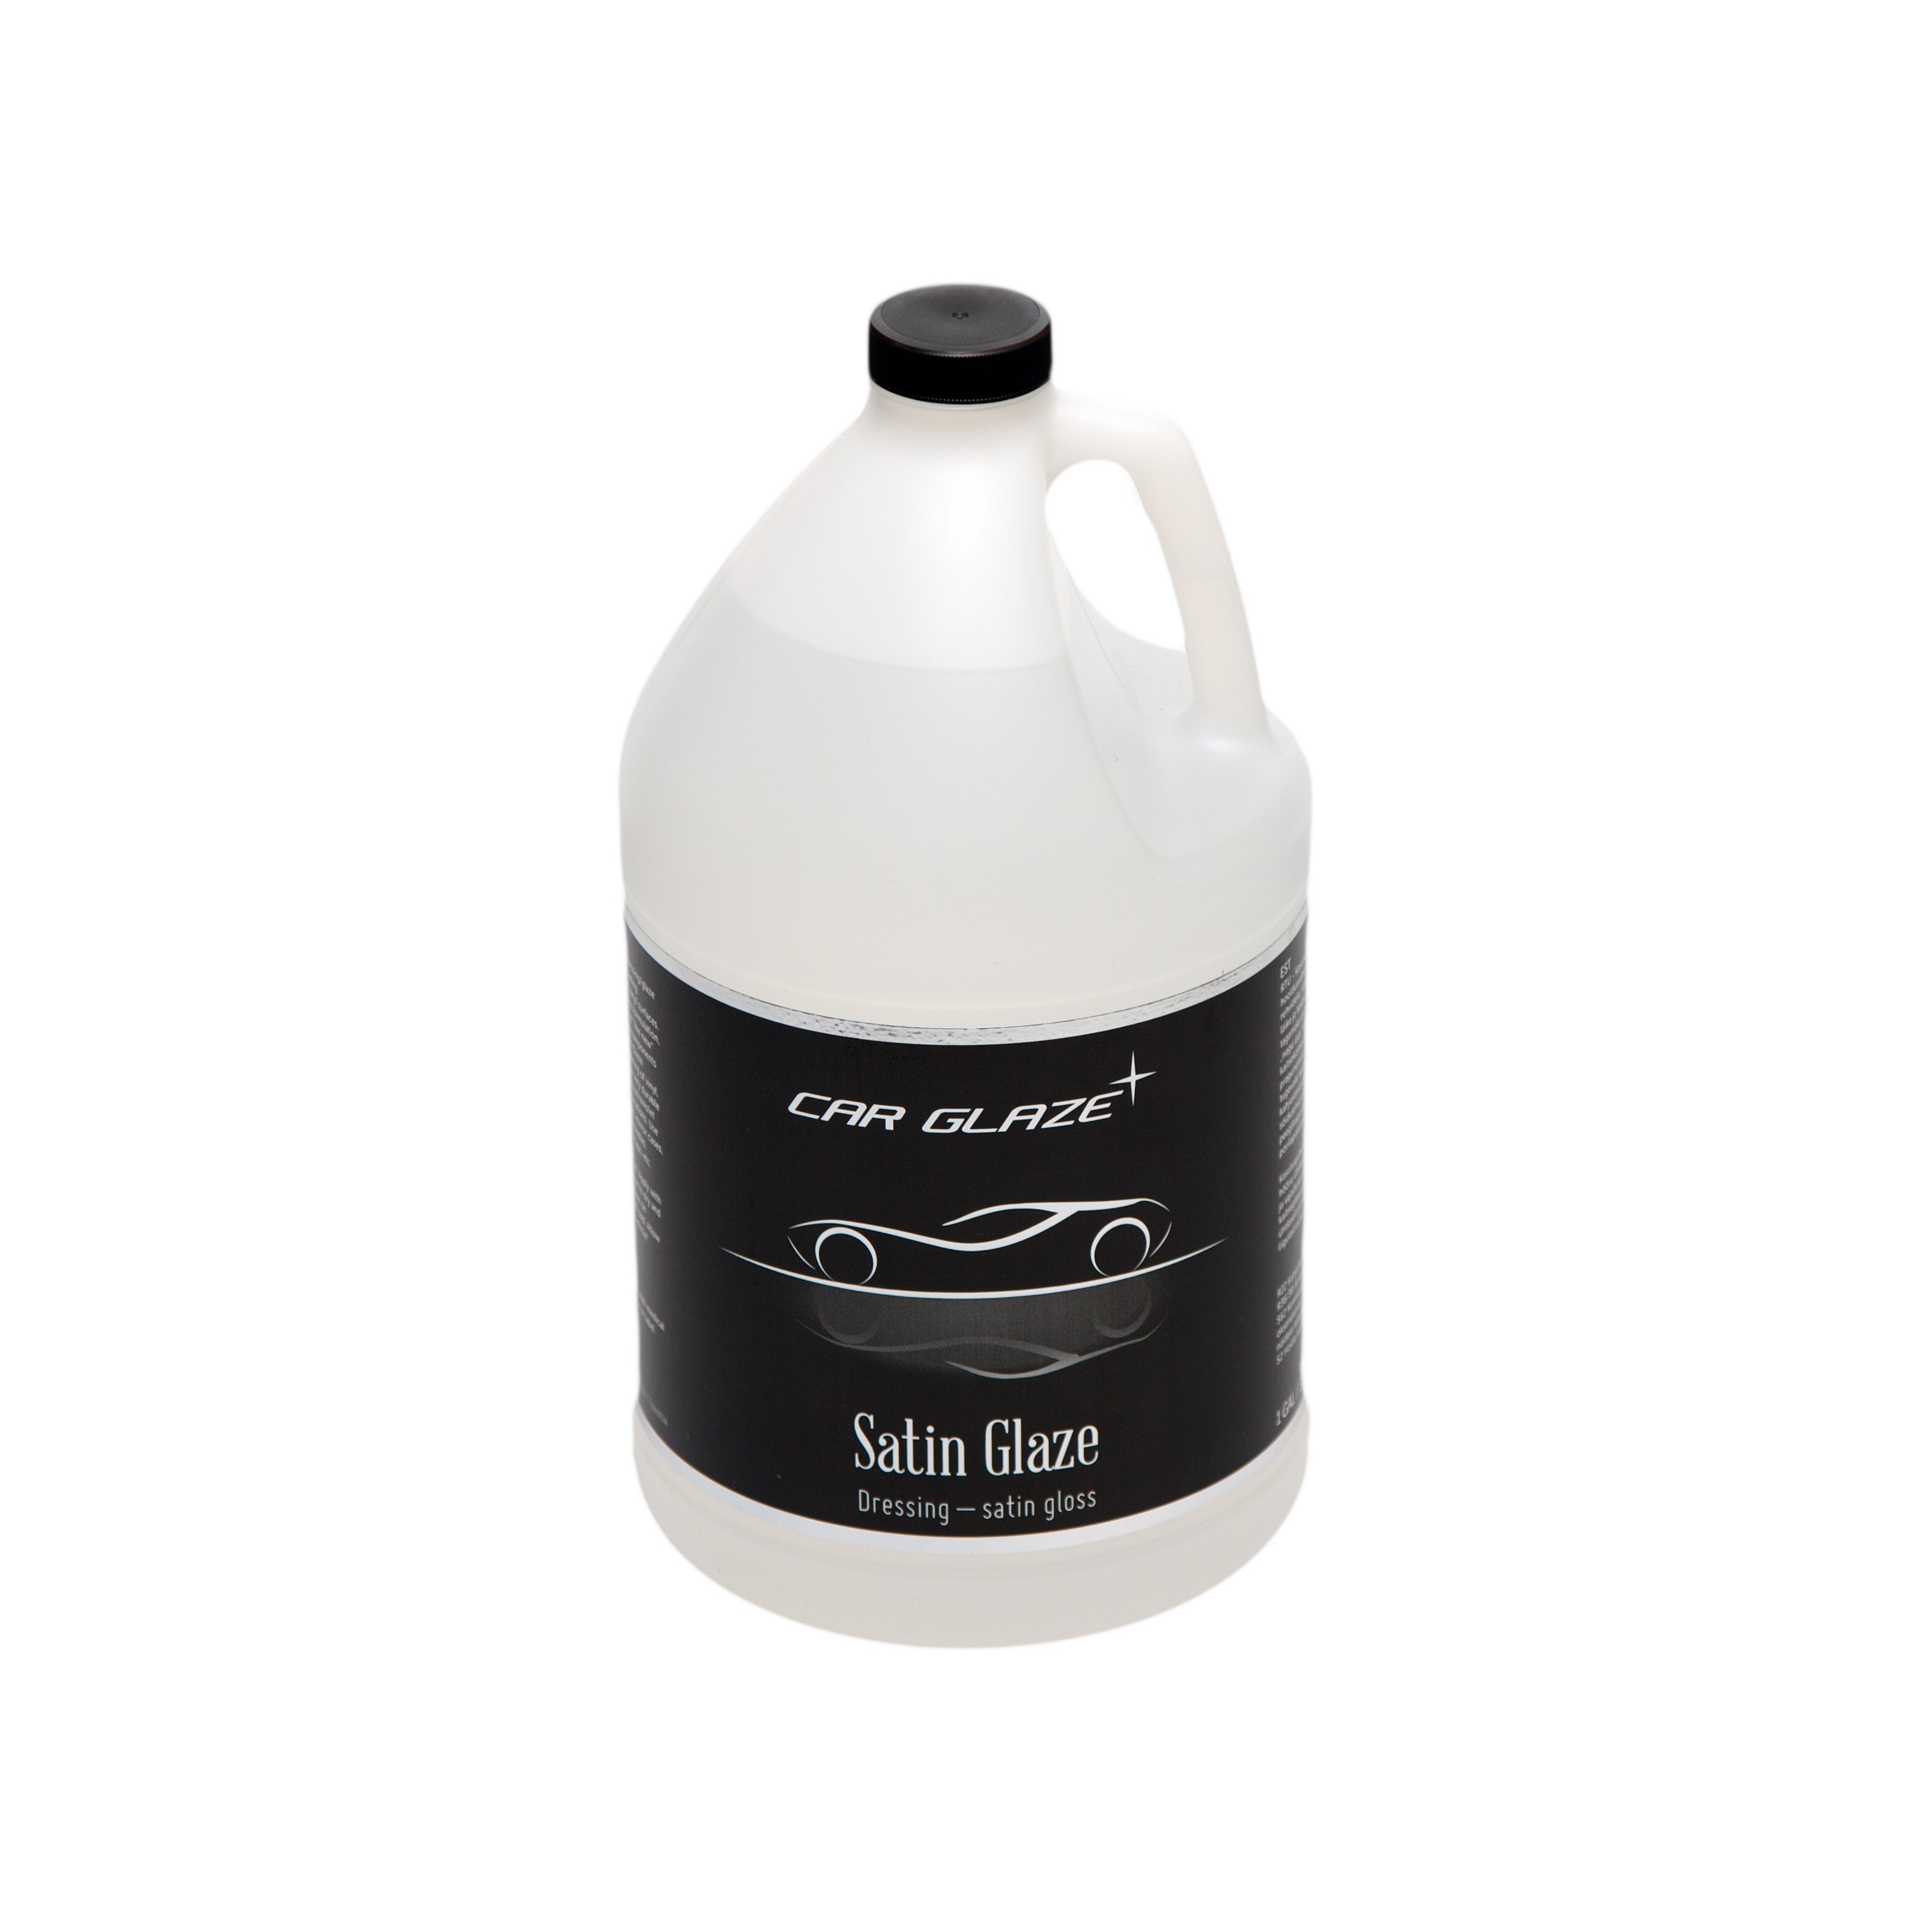 SATIN GLAZE  - Car Glaze - средство для ухода за резиной и пластиком / полироль / защита / глазурь - блеск для резины